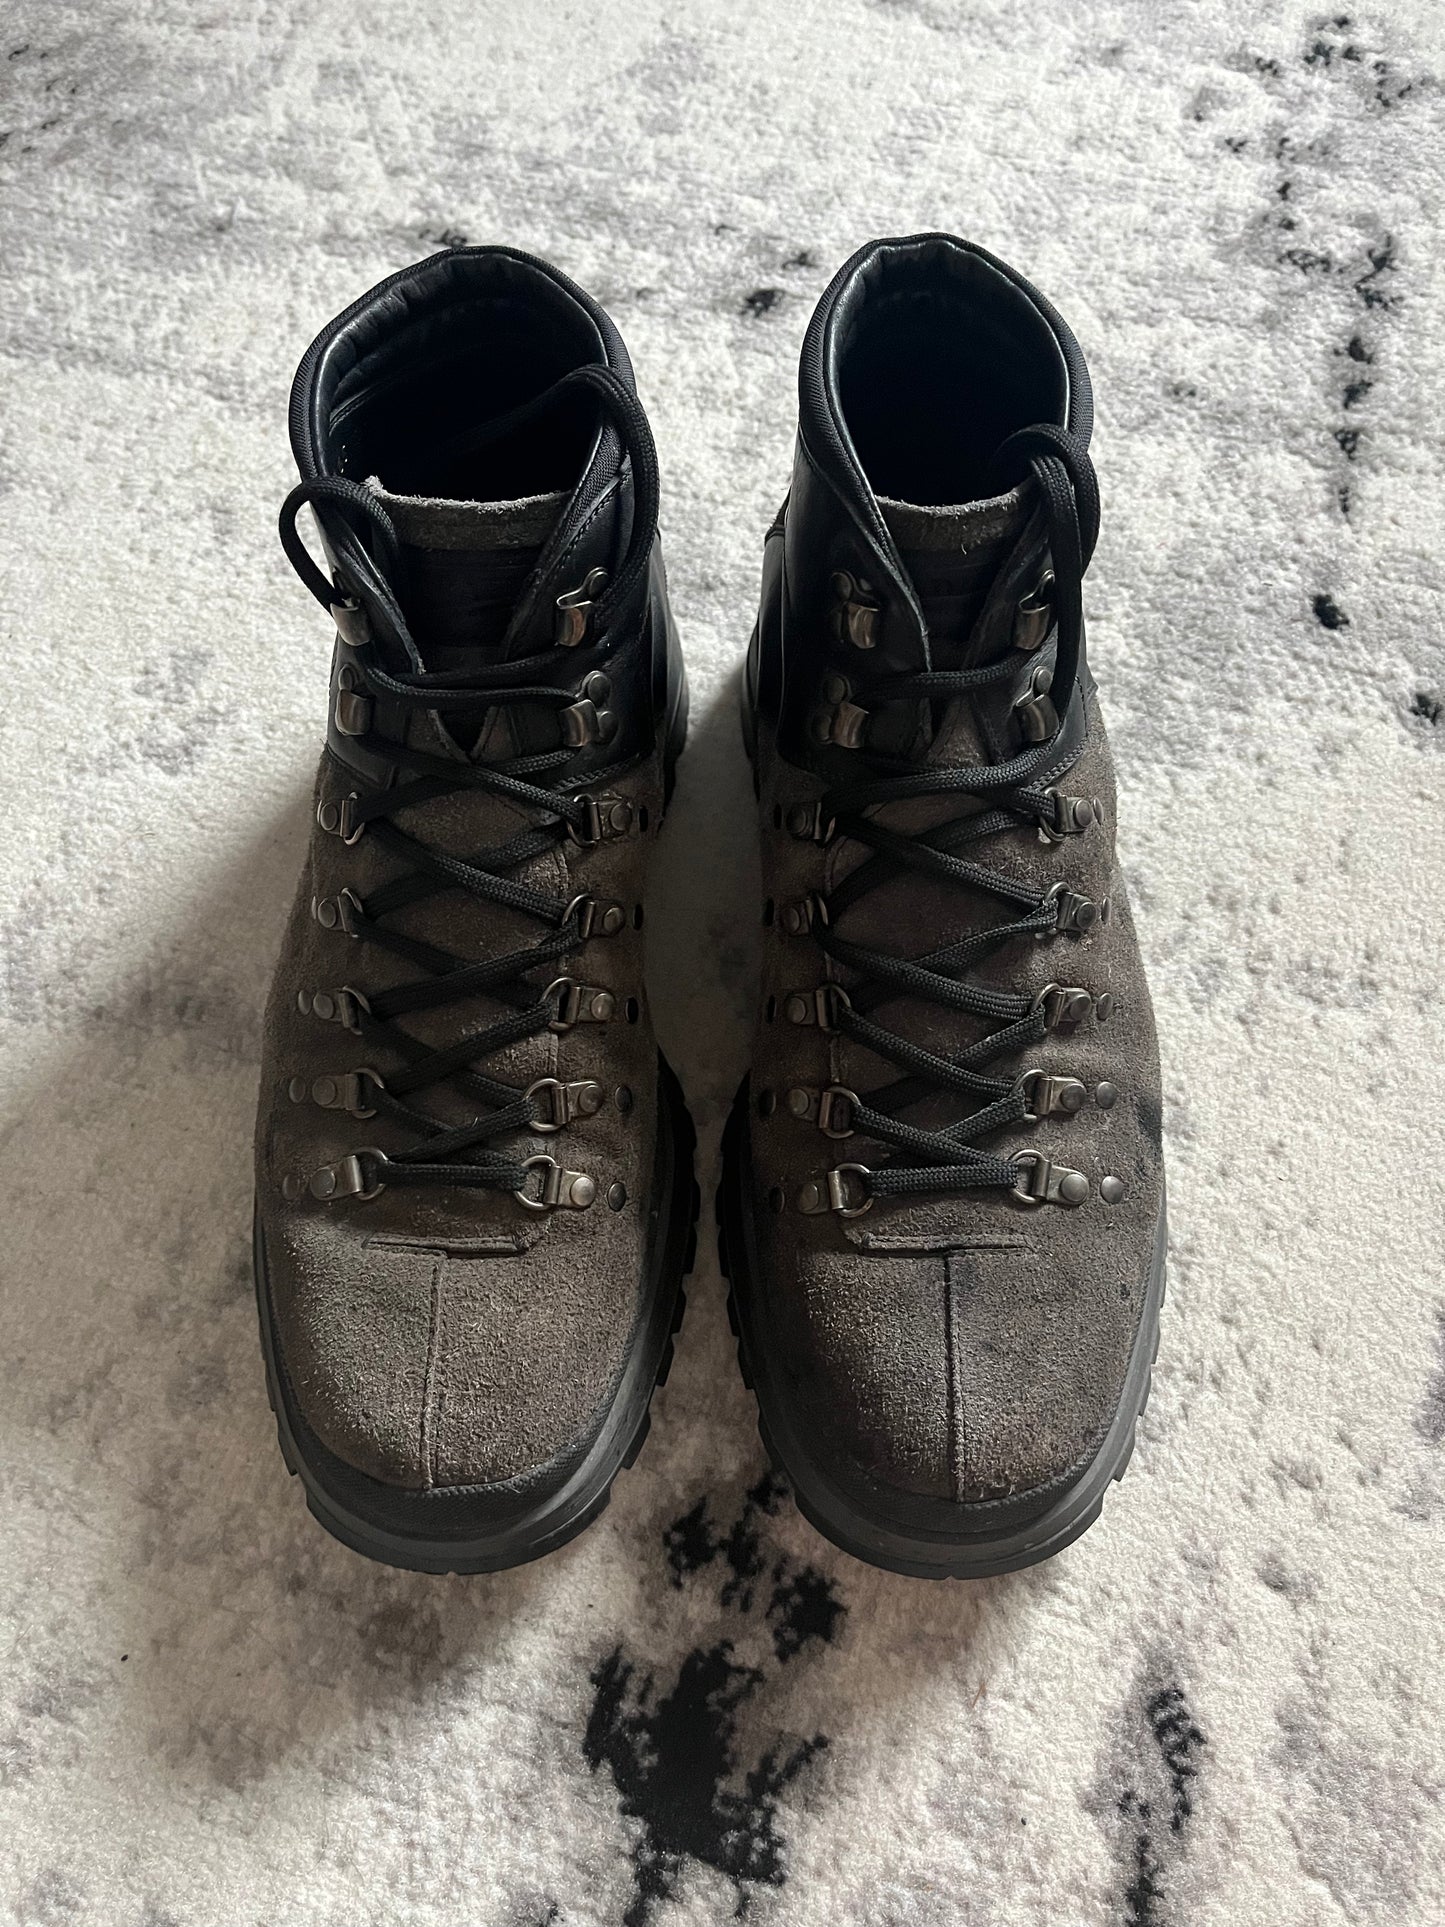 00s Prada Hiking Boots (45.5eu/us11.5)